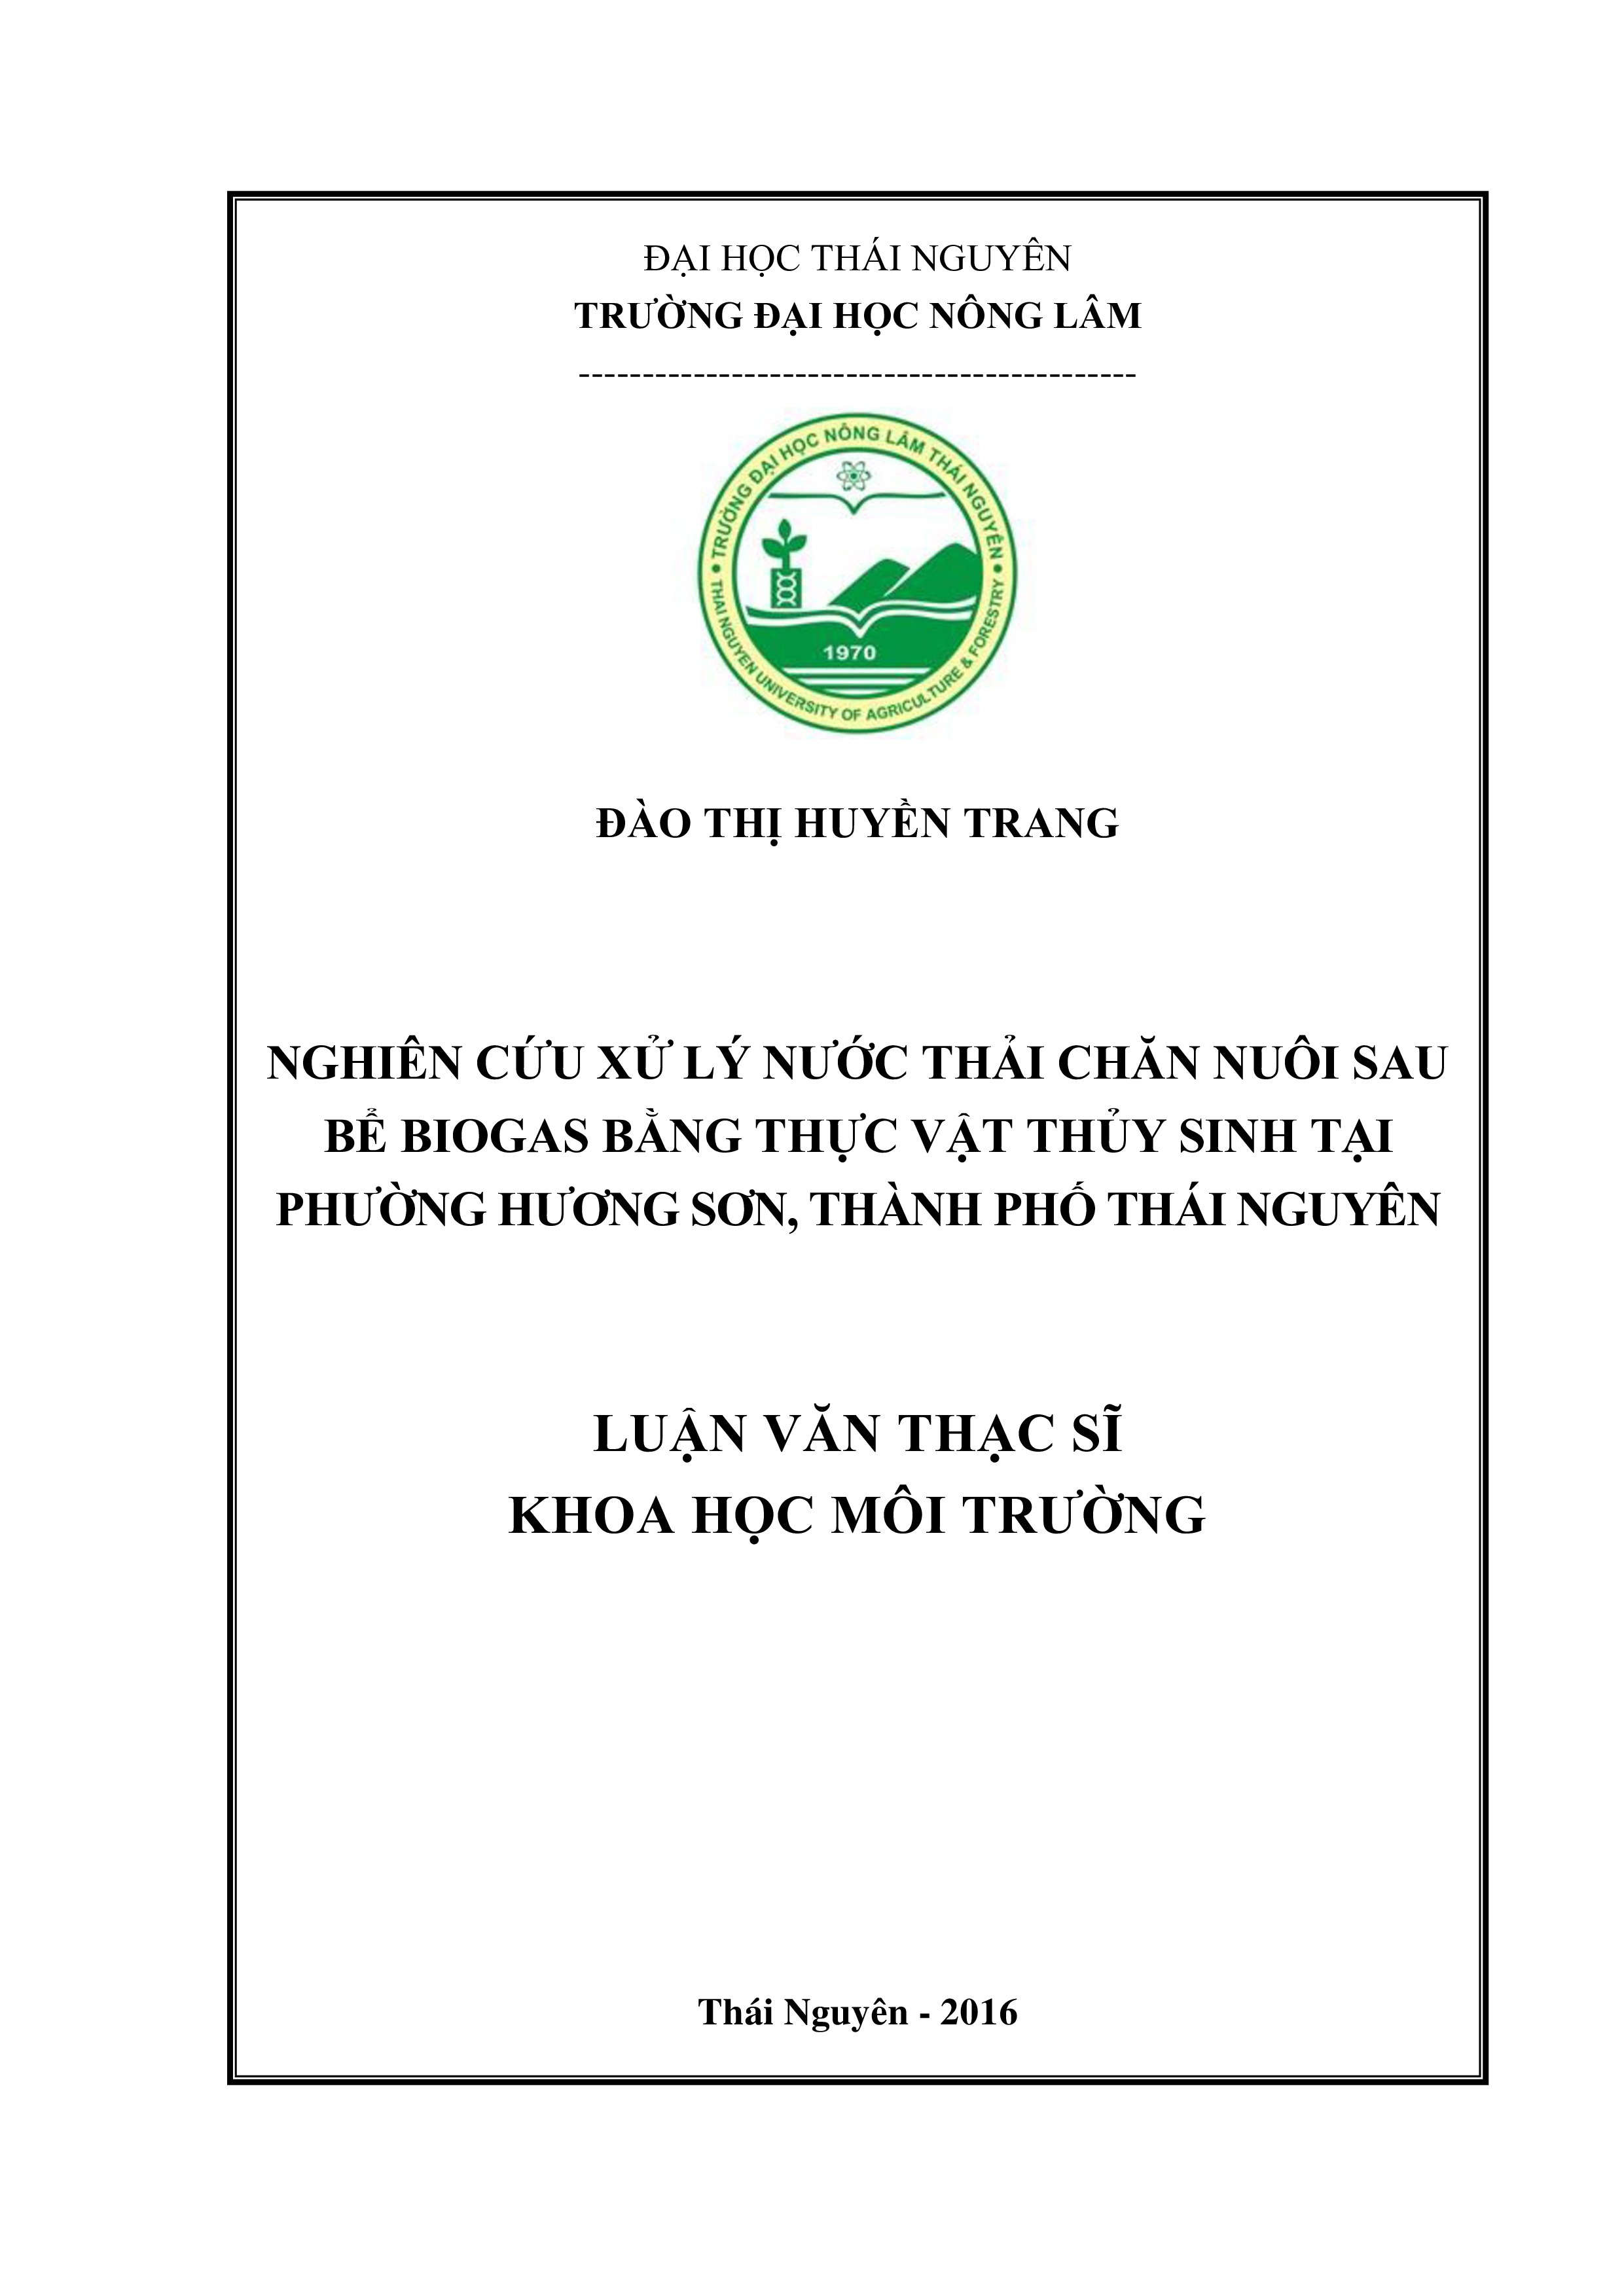 Nghiên cứu xử lý nước thải chăn nuôi  sau bể  biogas  bằng  thực vật thủy sinh  tại phường Hương Sơn, thành phố Thái  Nguyên